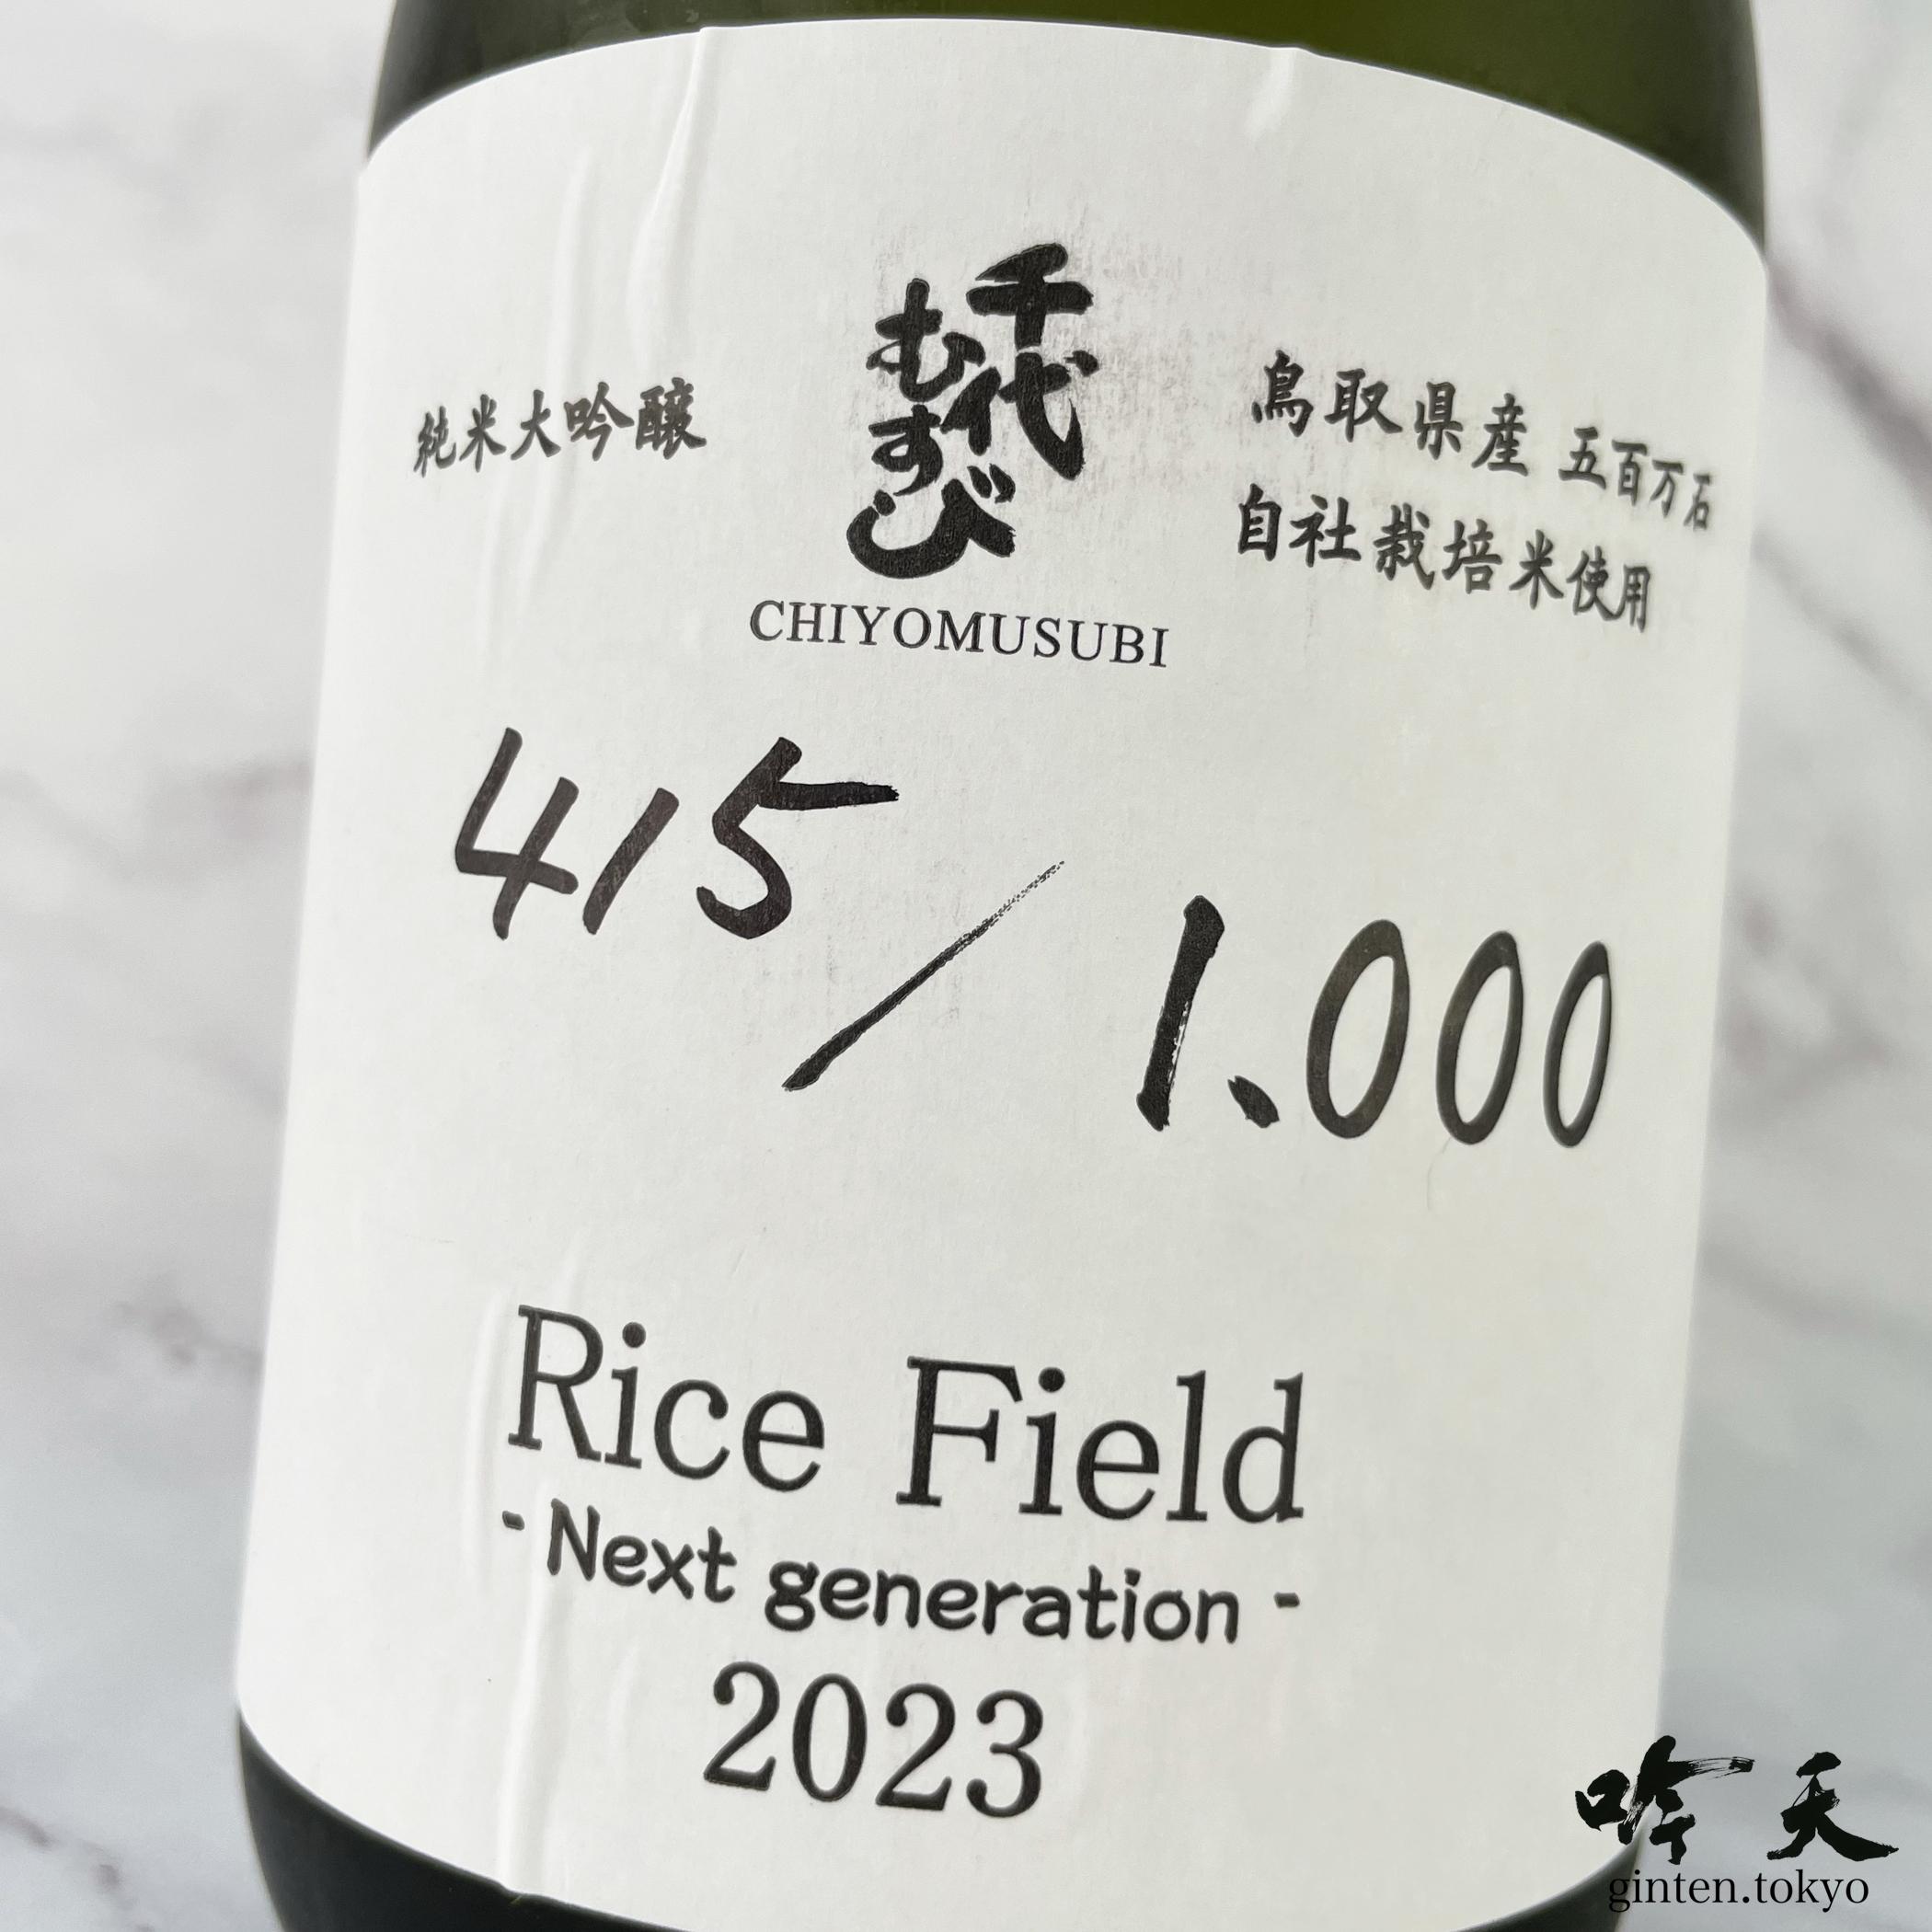 Rice Field（ライスフィールド）フレッシュで、フルーティーさのある、千代むすびの次世代を感じるお酒です。超限定品です！